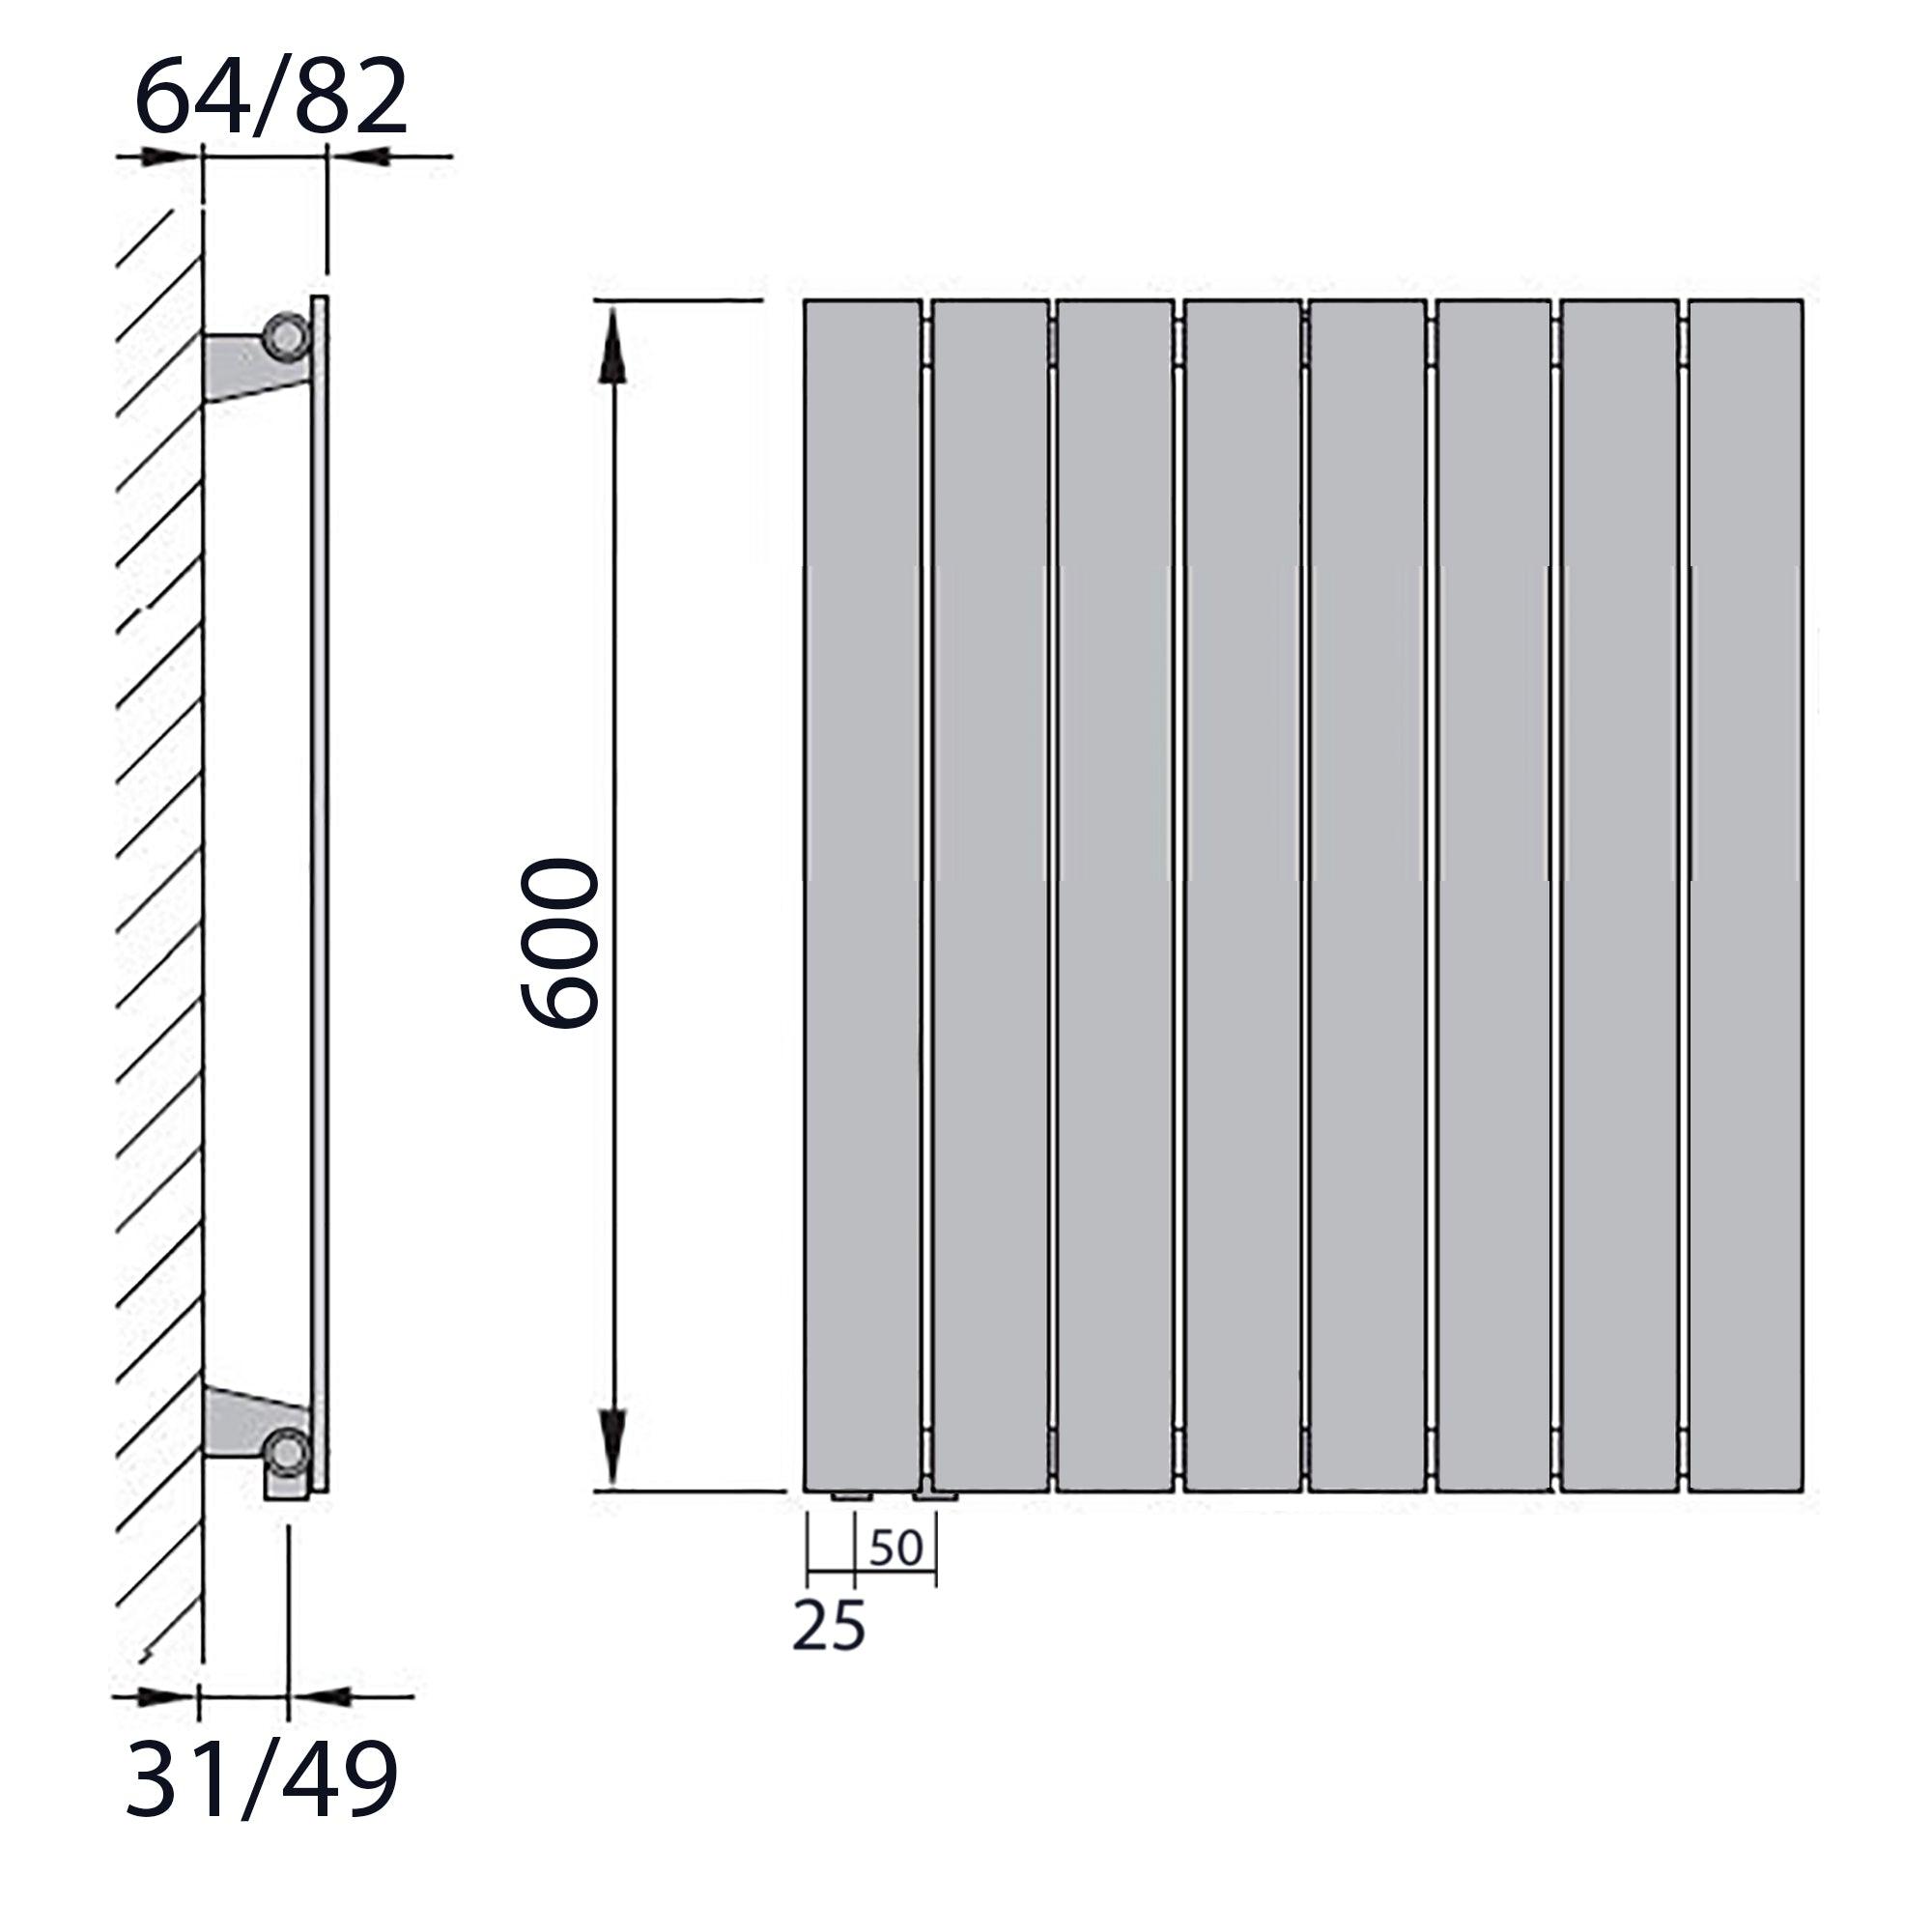 Design Paneelheizkörper Bad Flachheizkörper 600 x 602 mit Anschluss links | mit versetztem Mittelanschluss flach technische Zeichnung - heizkoerper.shop